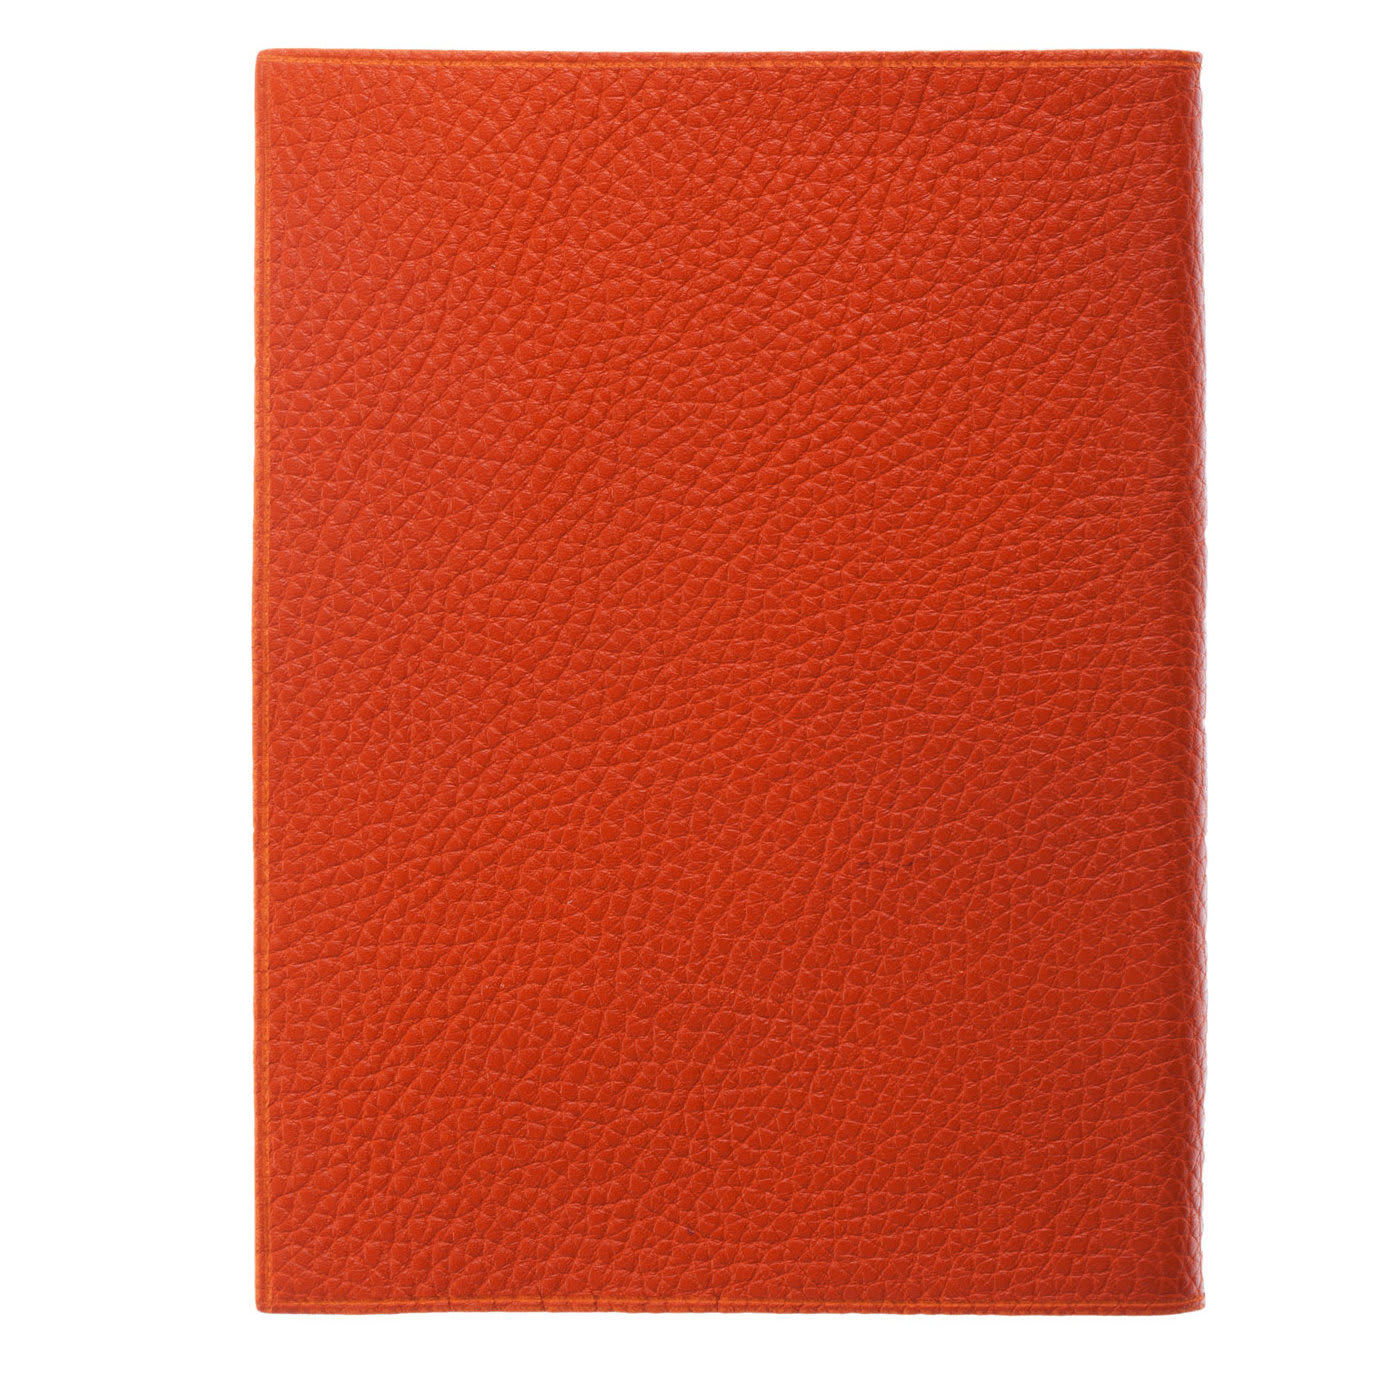 Arancia Leather Notebook - Giannini